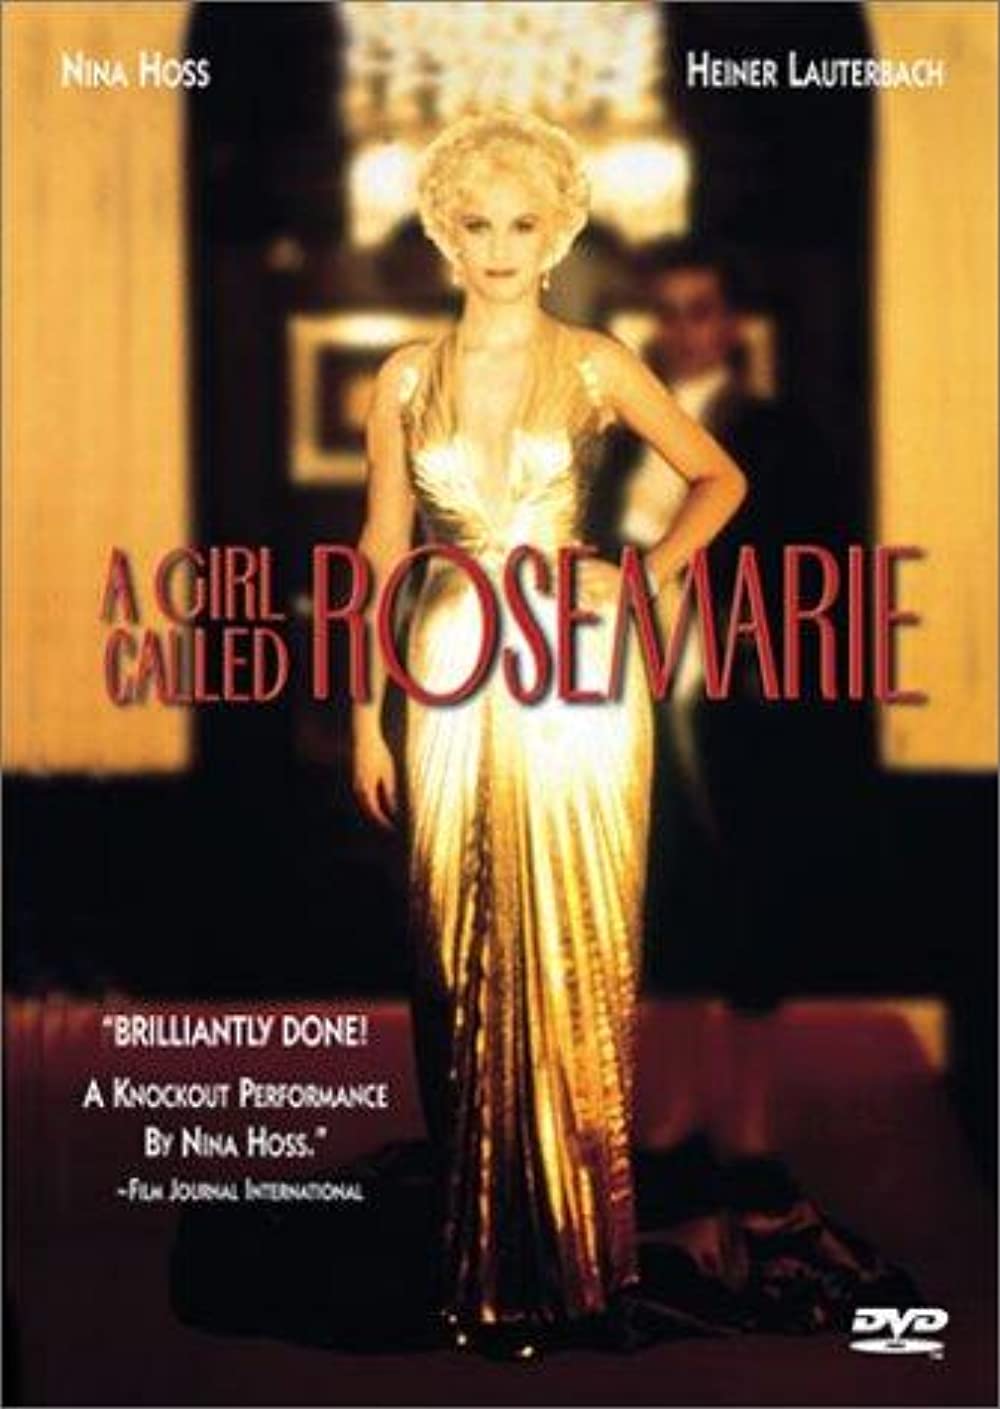 Filmbeschreibung zu Das Mädchen Rosemarie